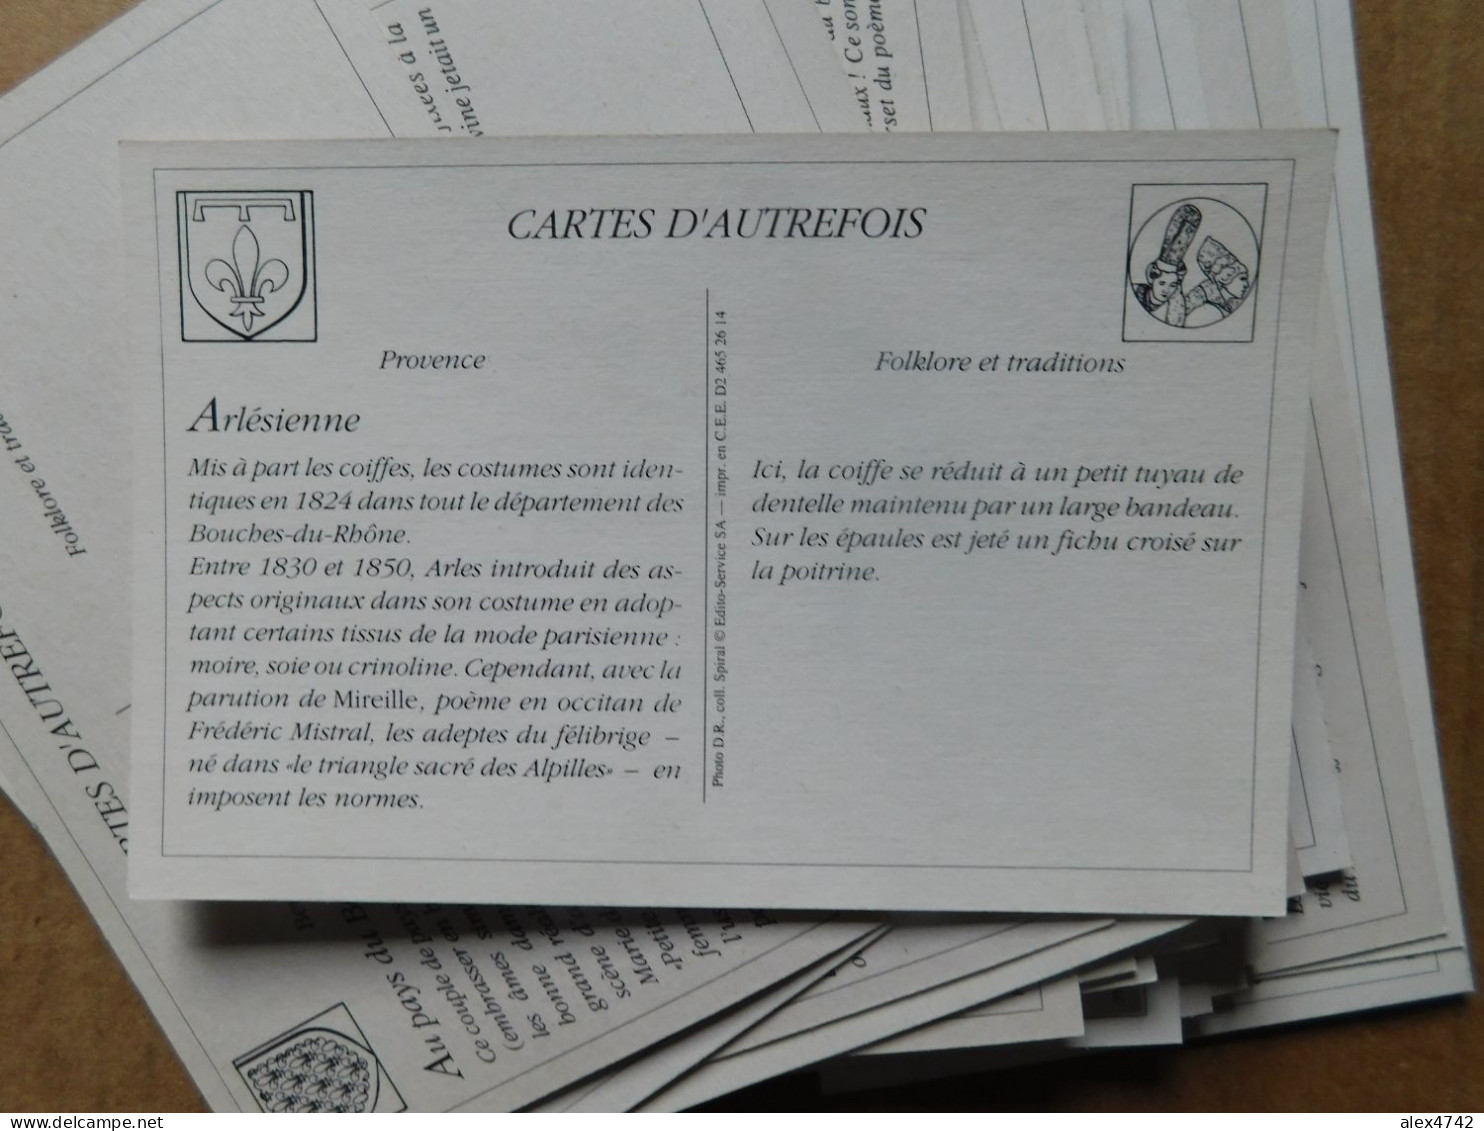 Lot de 404 cartes : France, Collection "Cartes d'autrefois" - 11 thèmes (BoxA)